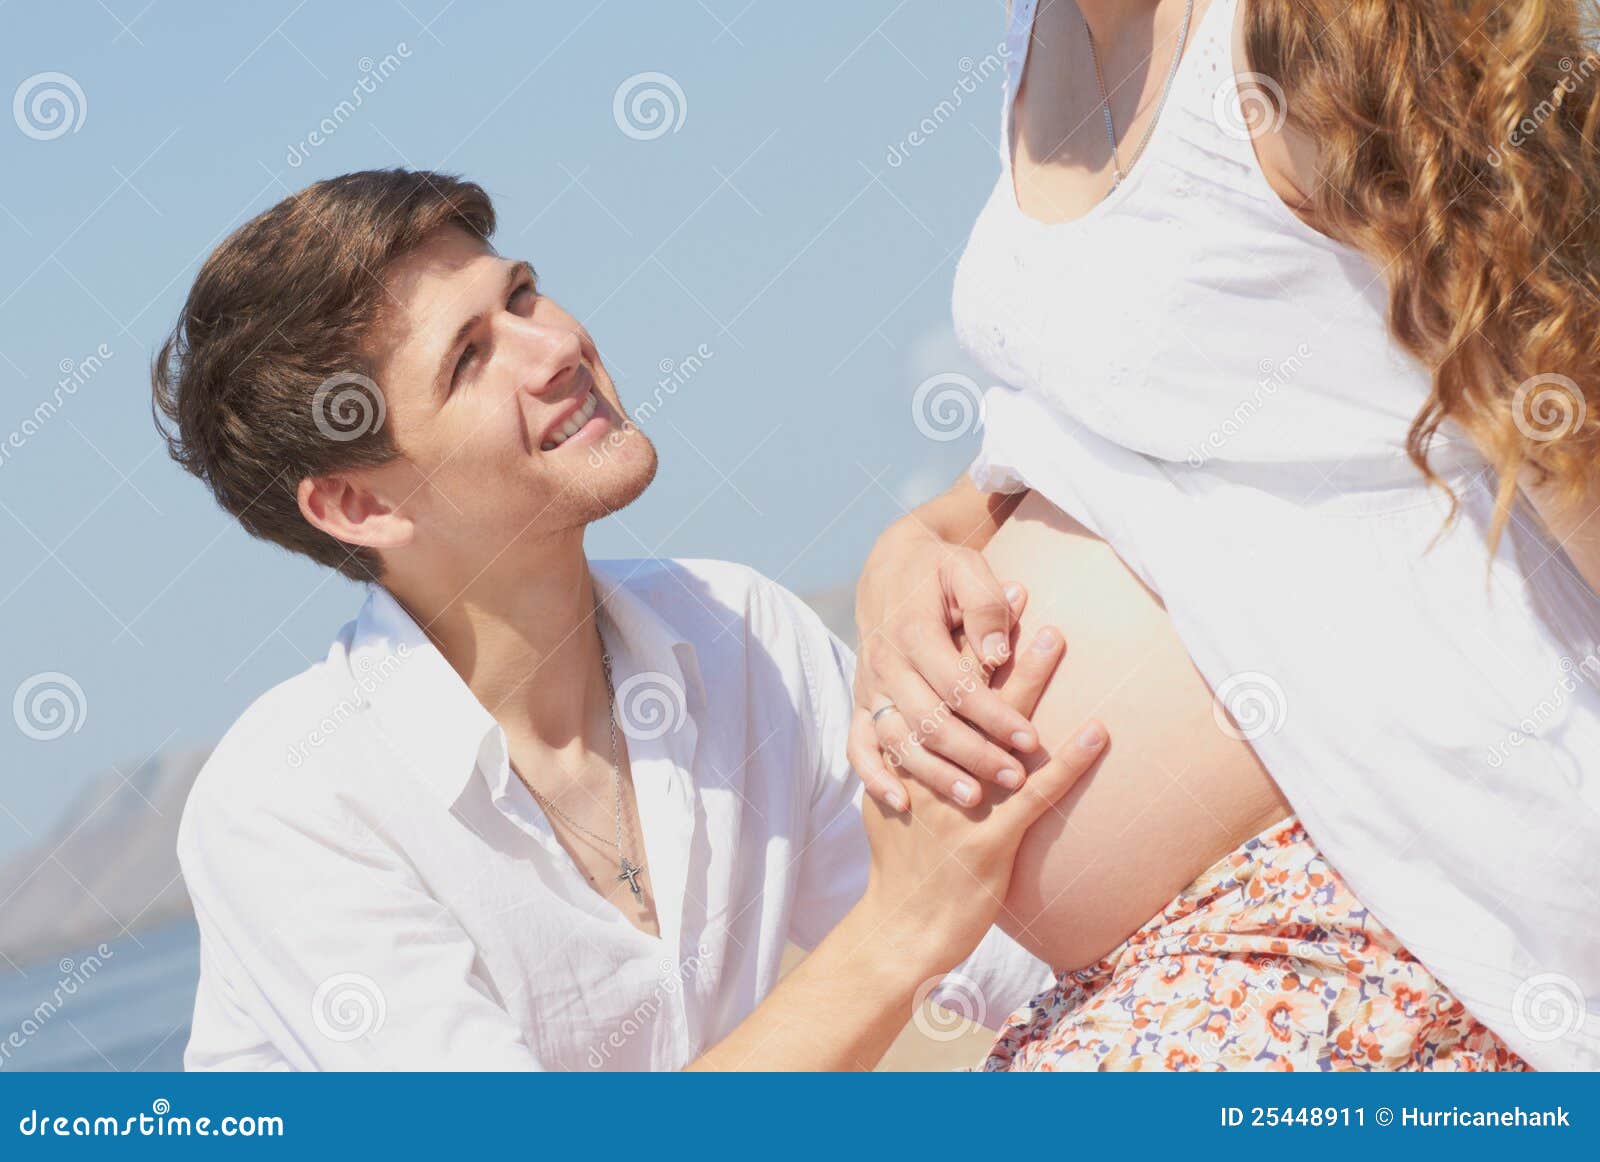 Вторая жена мужа беременна. Пара в ожидании ребенка. Счастливые моменты в беременность фото. Муж и жена ждут ребенка картинки.